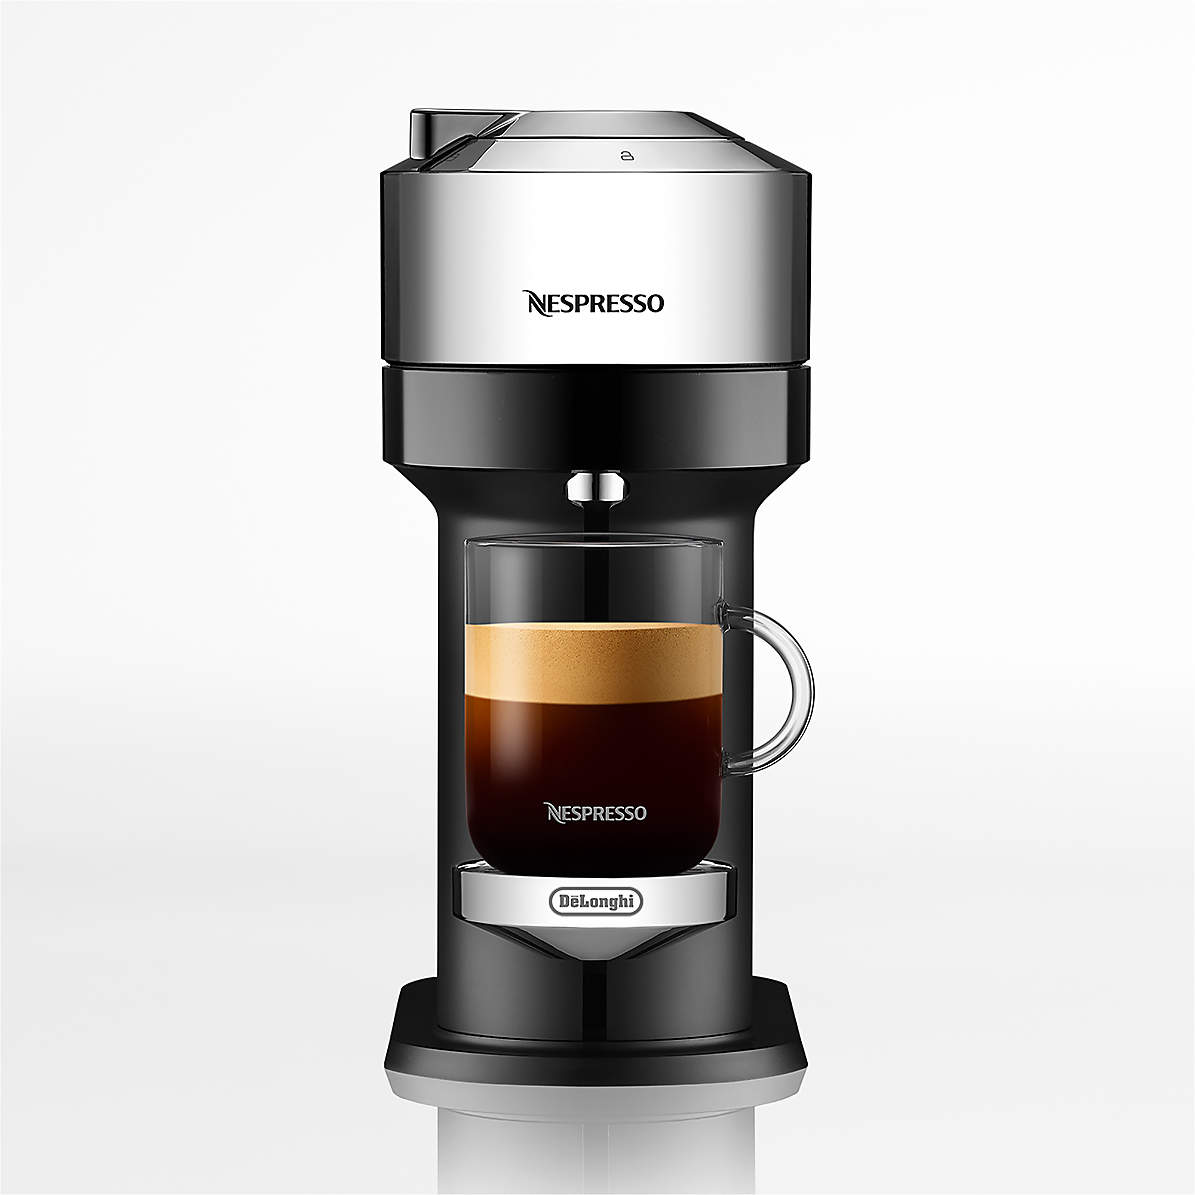 Nespresso Vertuo Next Coffee Espresso Machine 18Oz Deluxe Matte